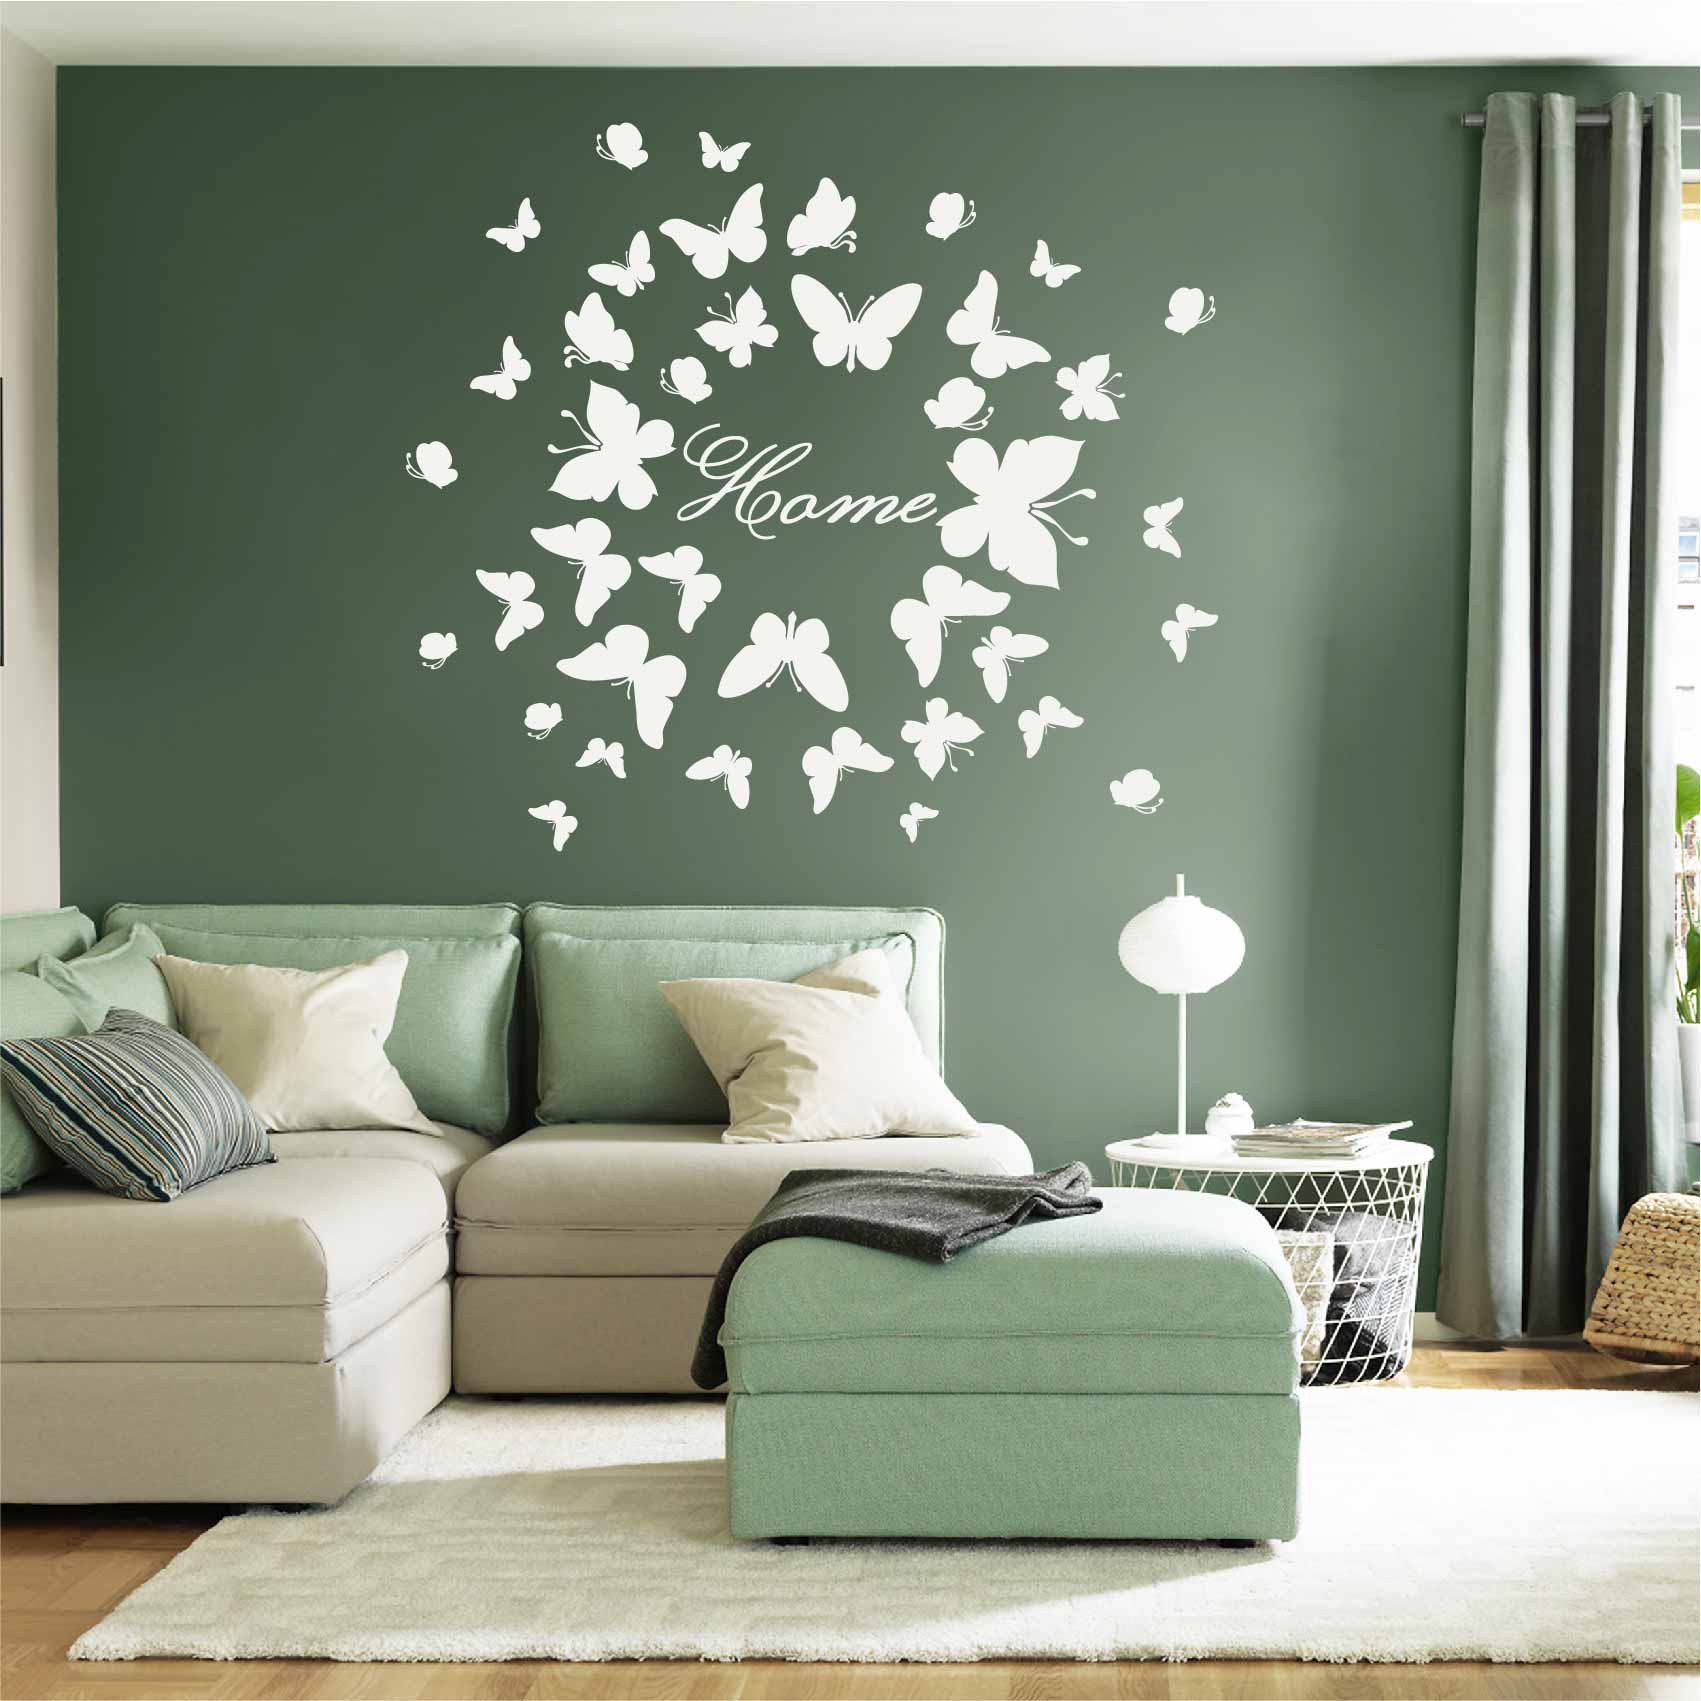 stickers-papillons-blancs-ref24papillon-stickers-muraux-papillon-autocollant-papillons-deco-sticker-mural-chambre-enfant-fille-bébé-salon